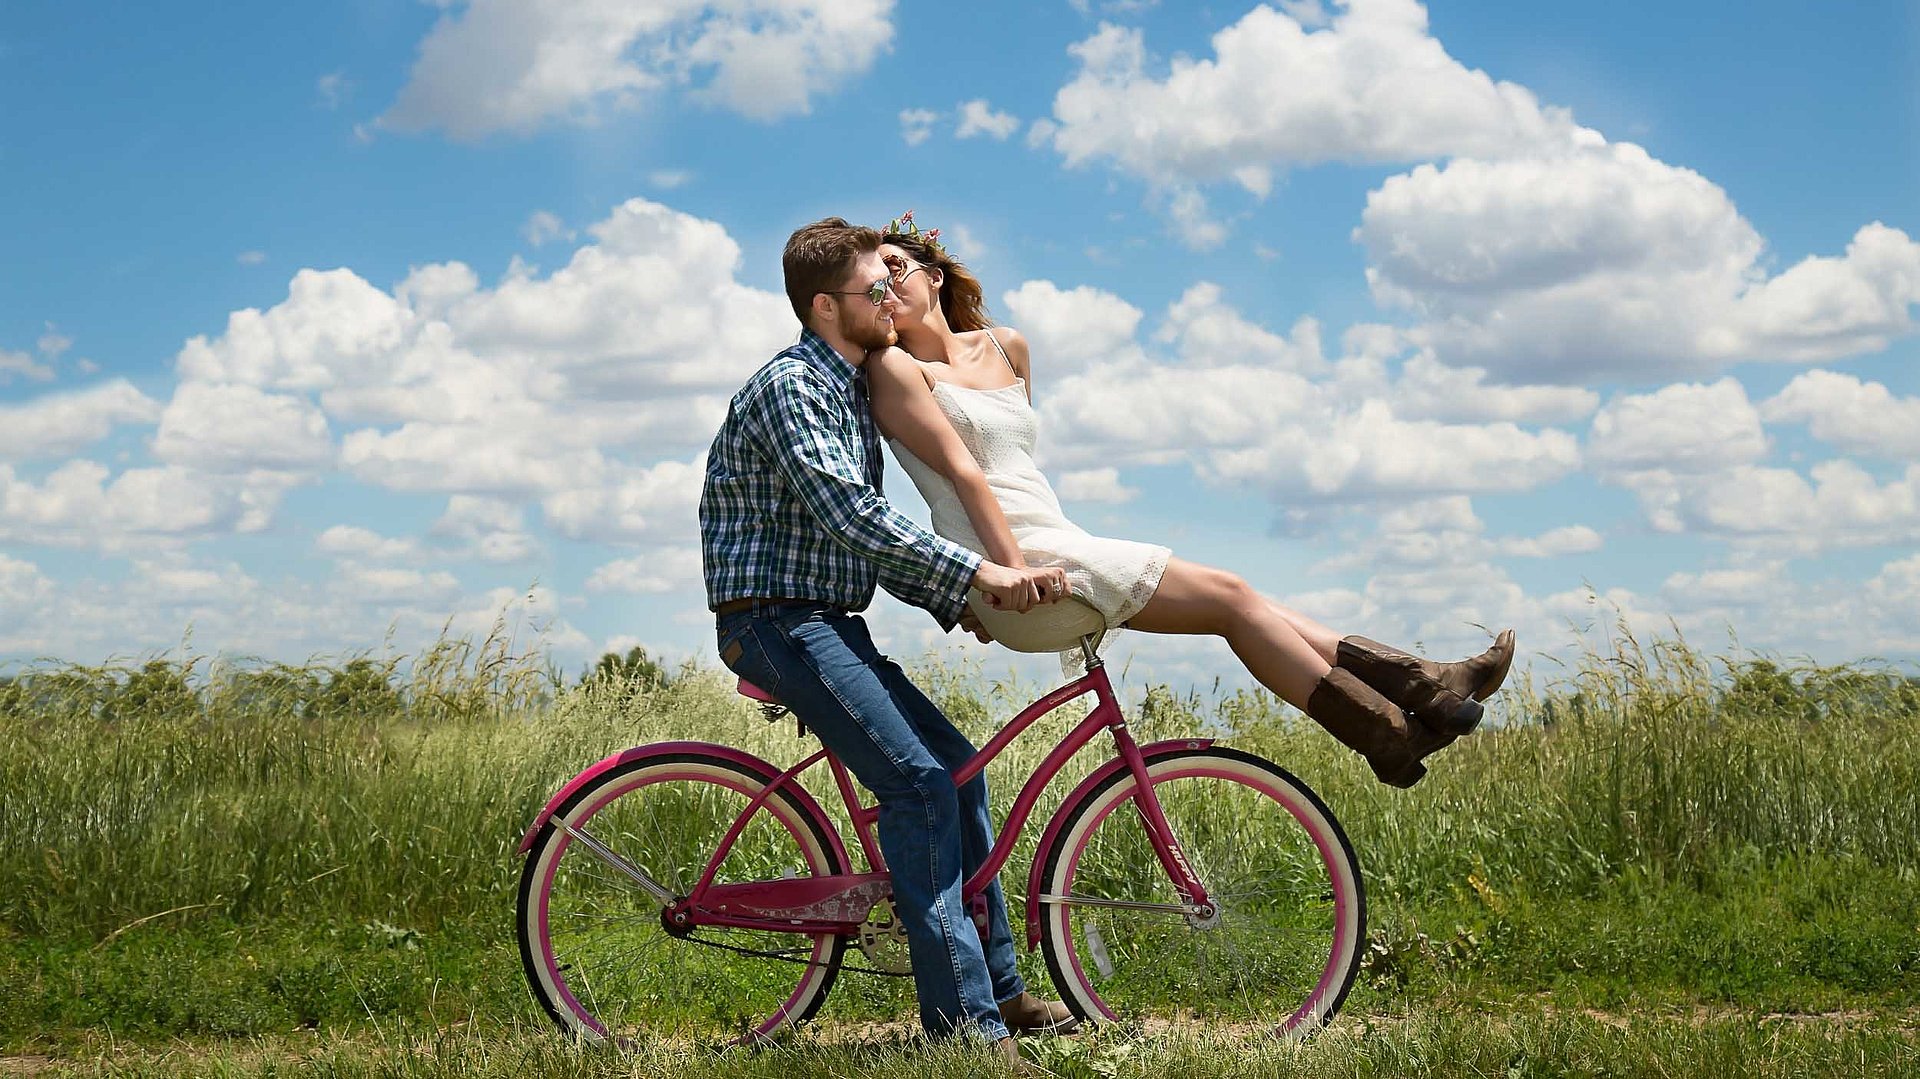 Radfahren und Radwandern in Oberfranken - junger Mann sitzt auf Fahrrad, seine Partnerin ist auf dem vorderen Gepäckträger und küsst ihn; sonniges Wetter auf einem Feld